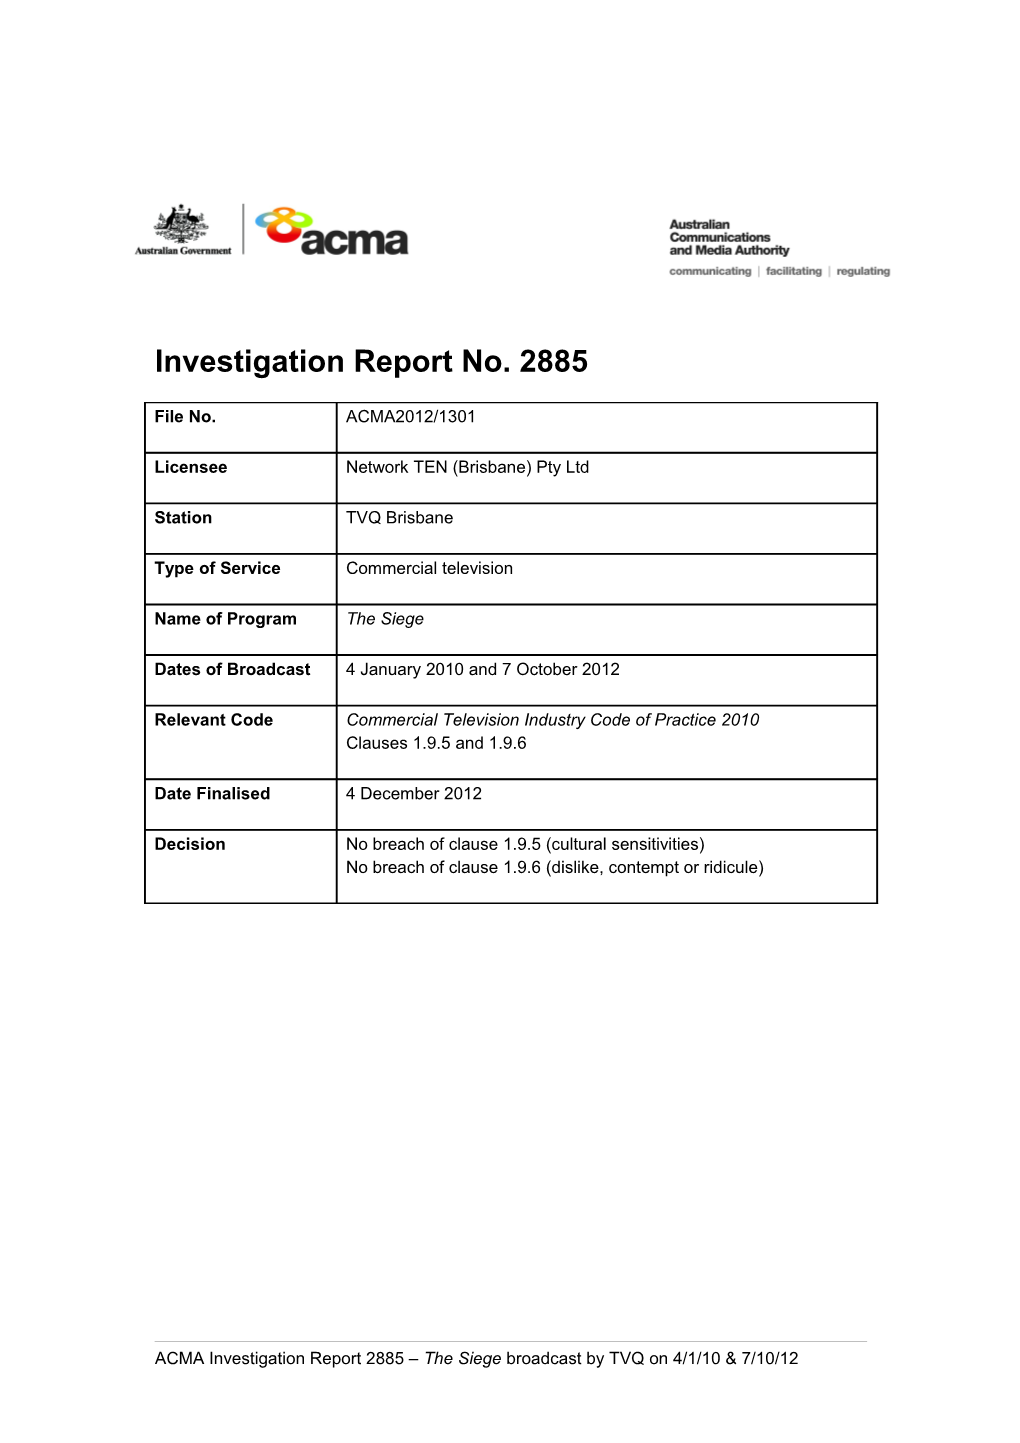 TVQ Brisbane - ACMA Investigation Report 2885